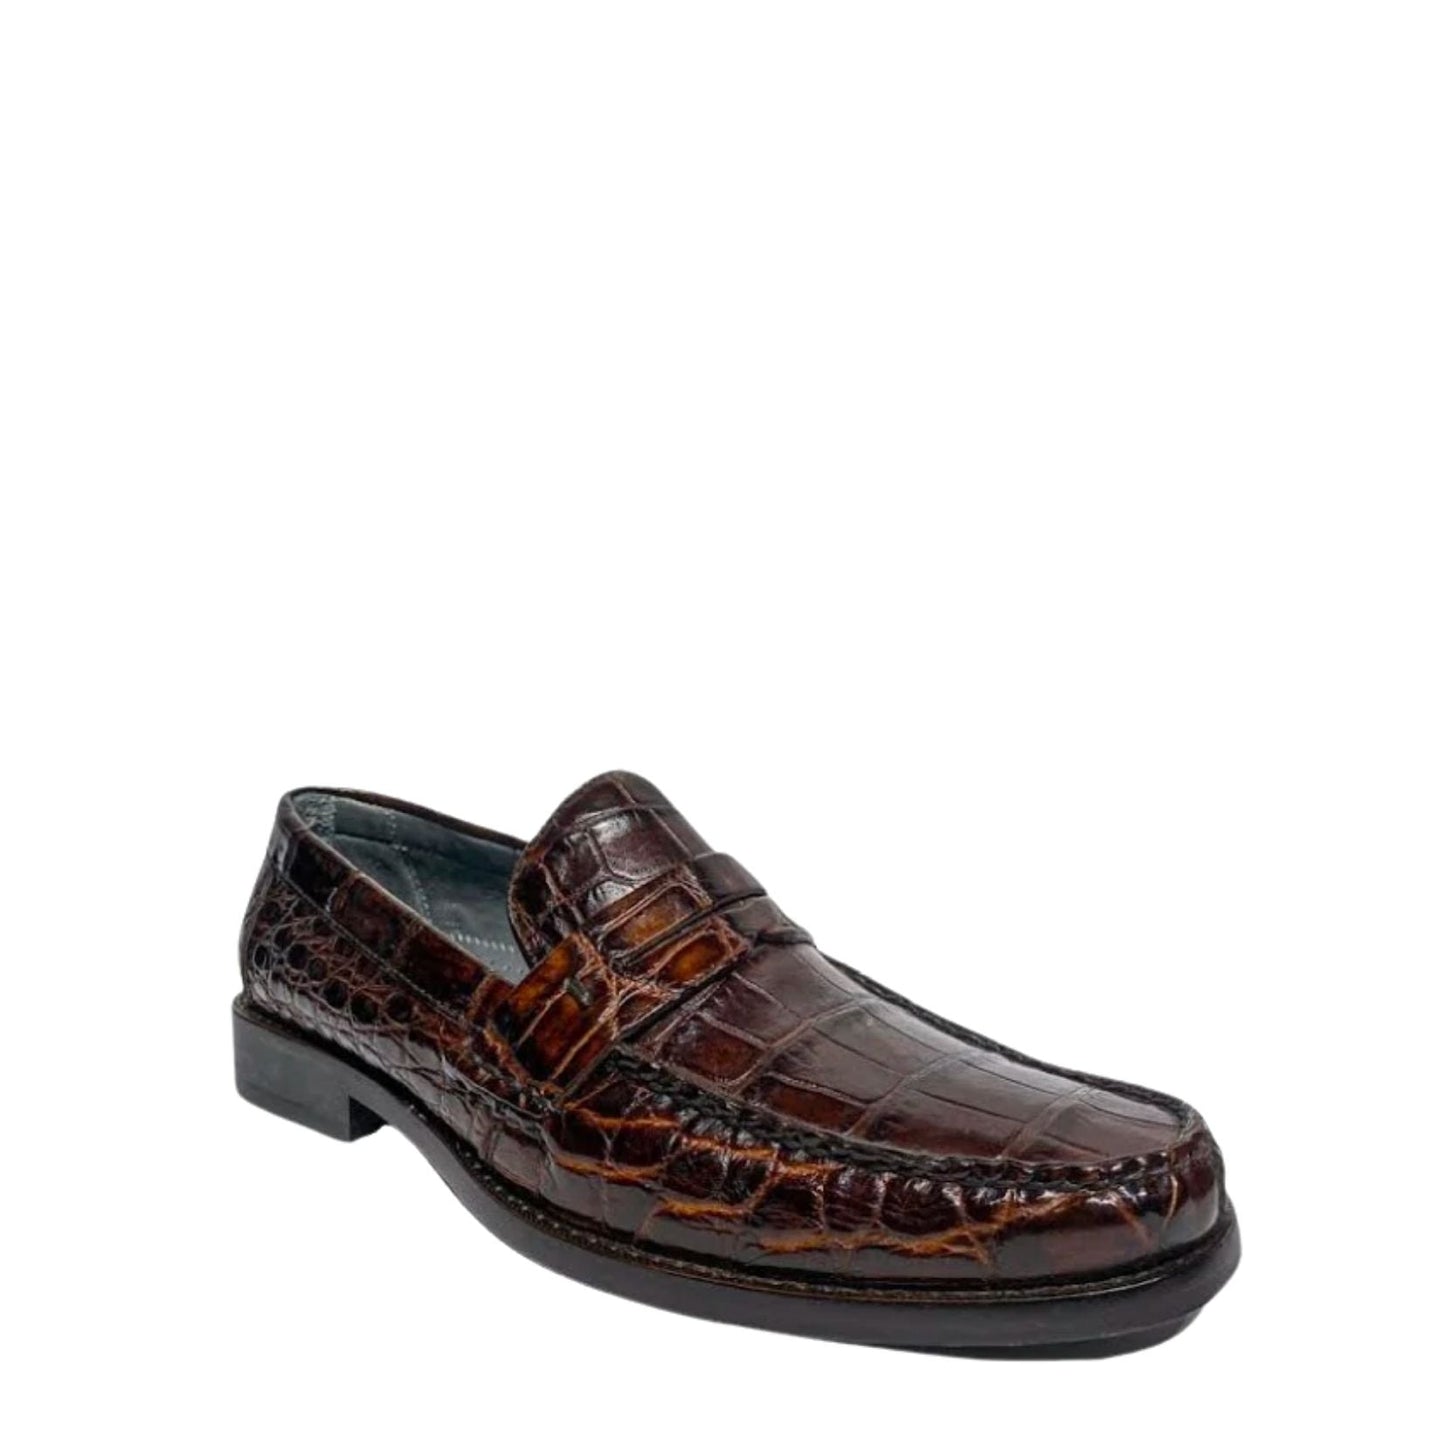 R46LPLP - Cuadra brown casual dress alligator loafer moccasin for men-Kuet.us